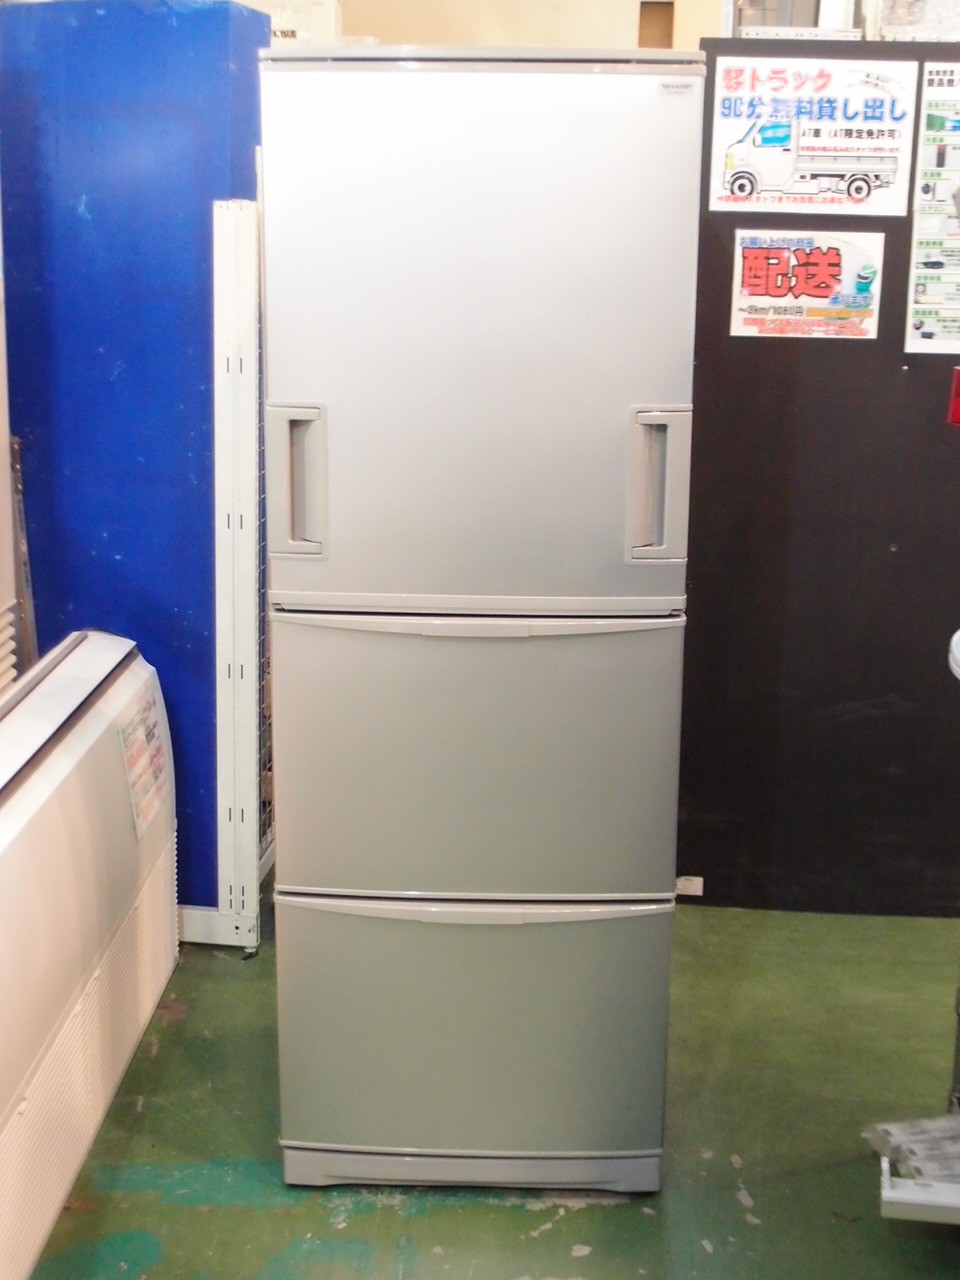 2009年製 SHARP 3ドア冷凍冷蔵庫 SJ-WA35P-S 345リットル-